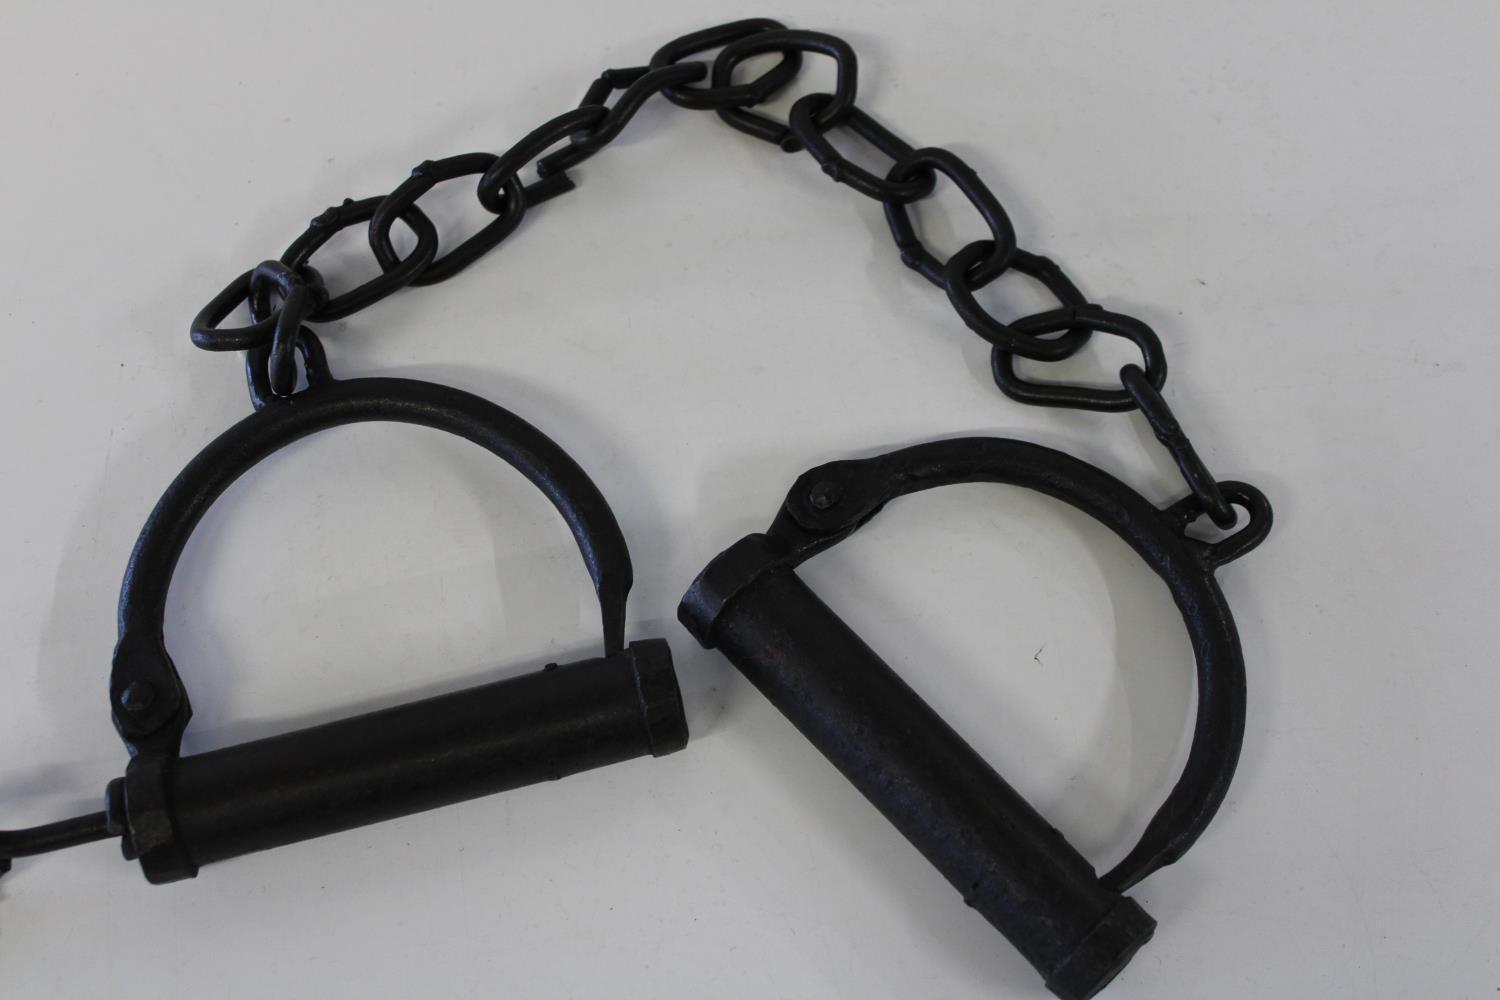 A set of Victorian handcuffs